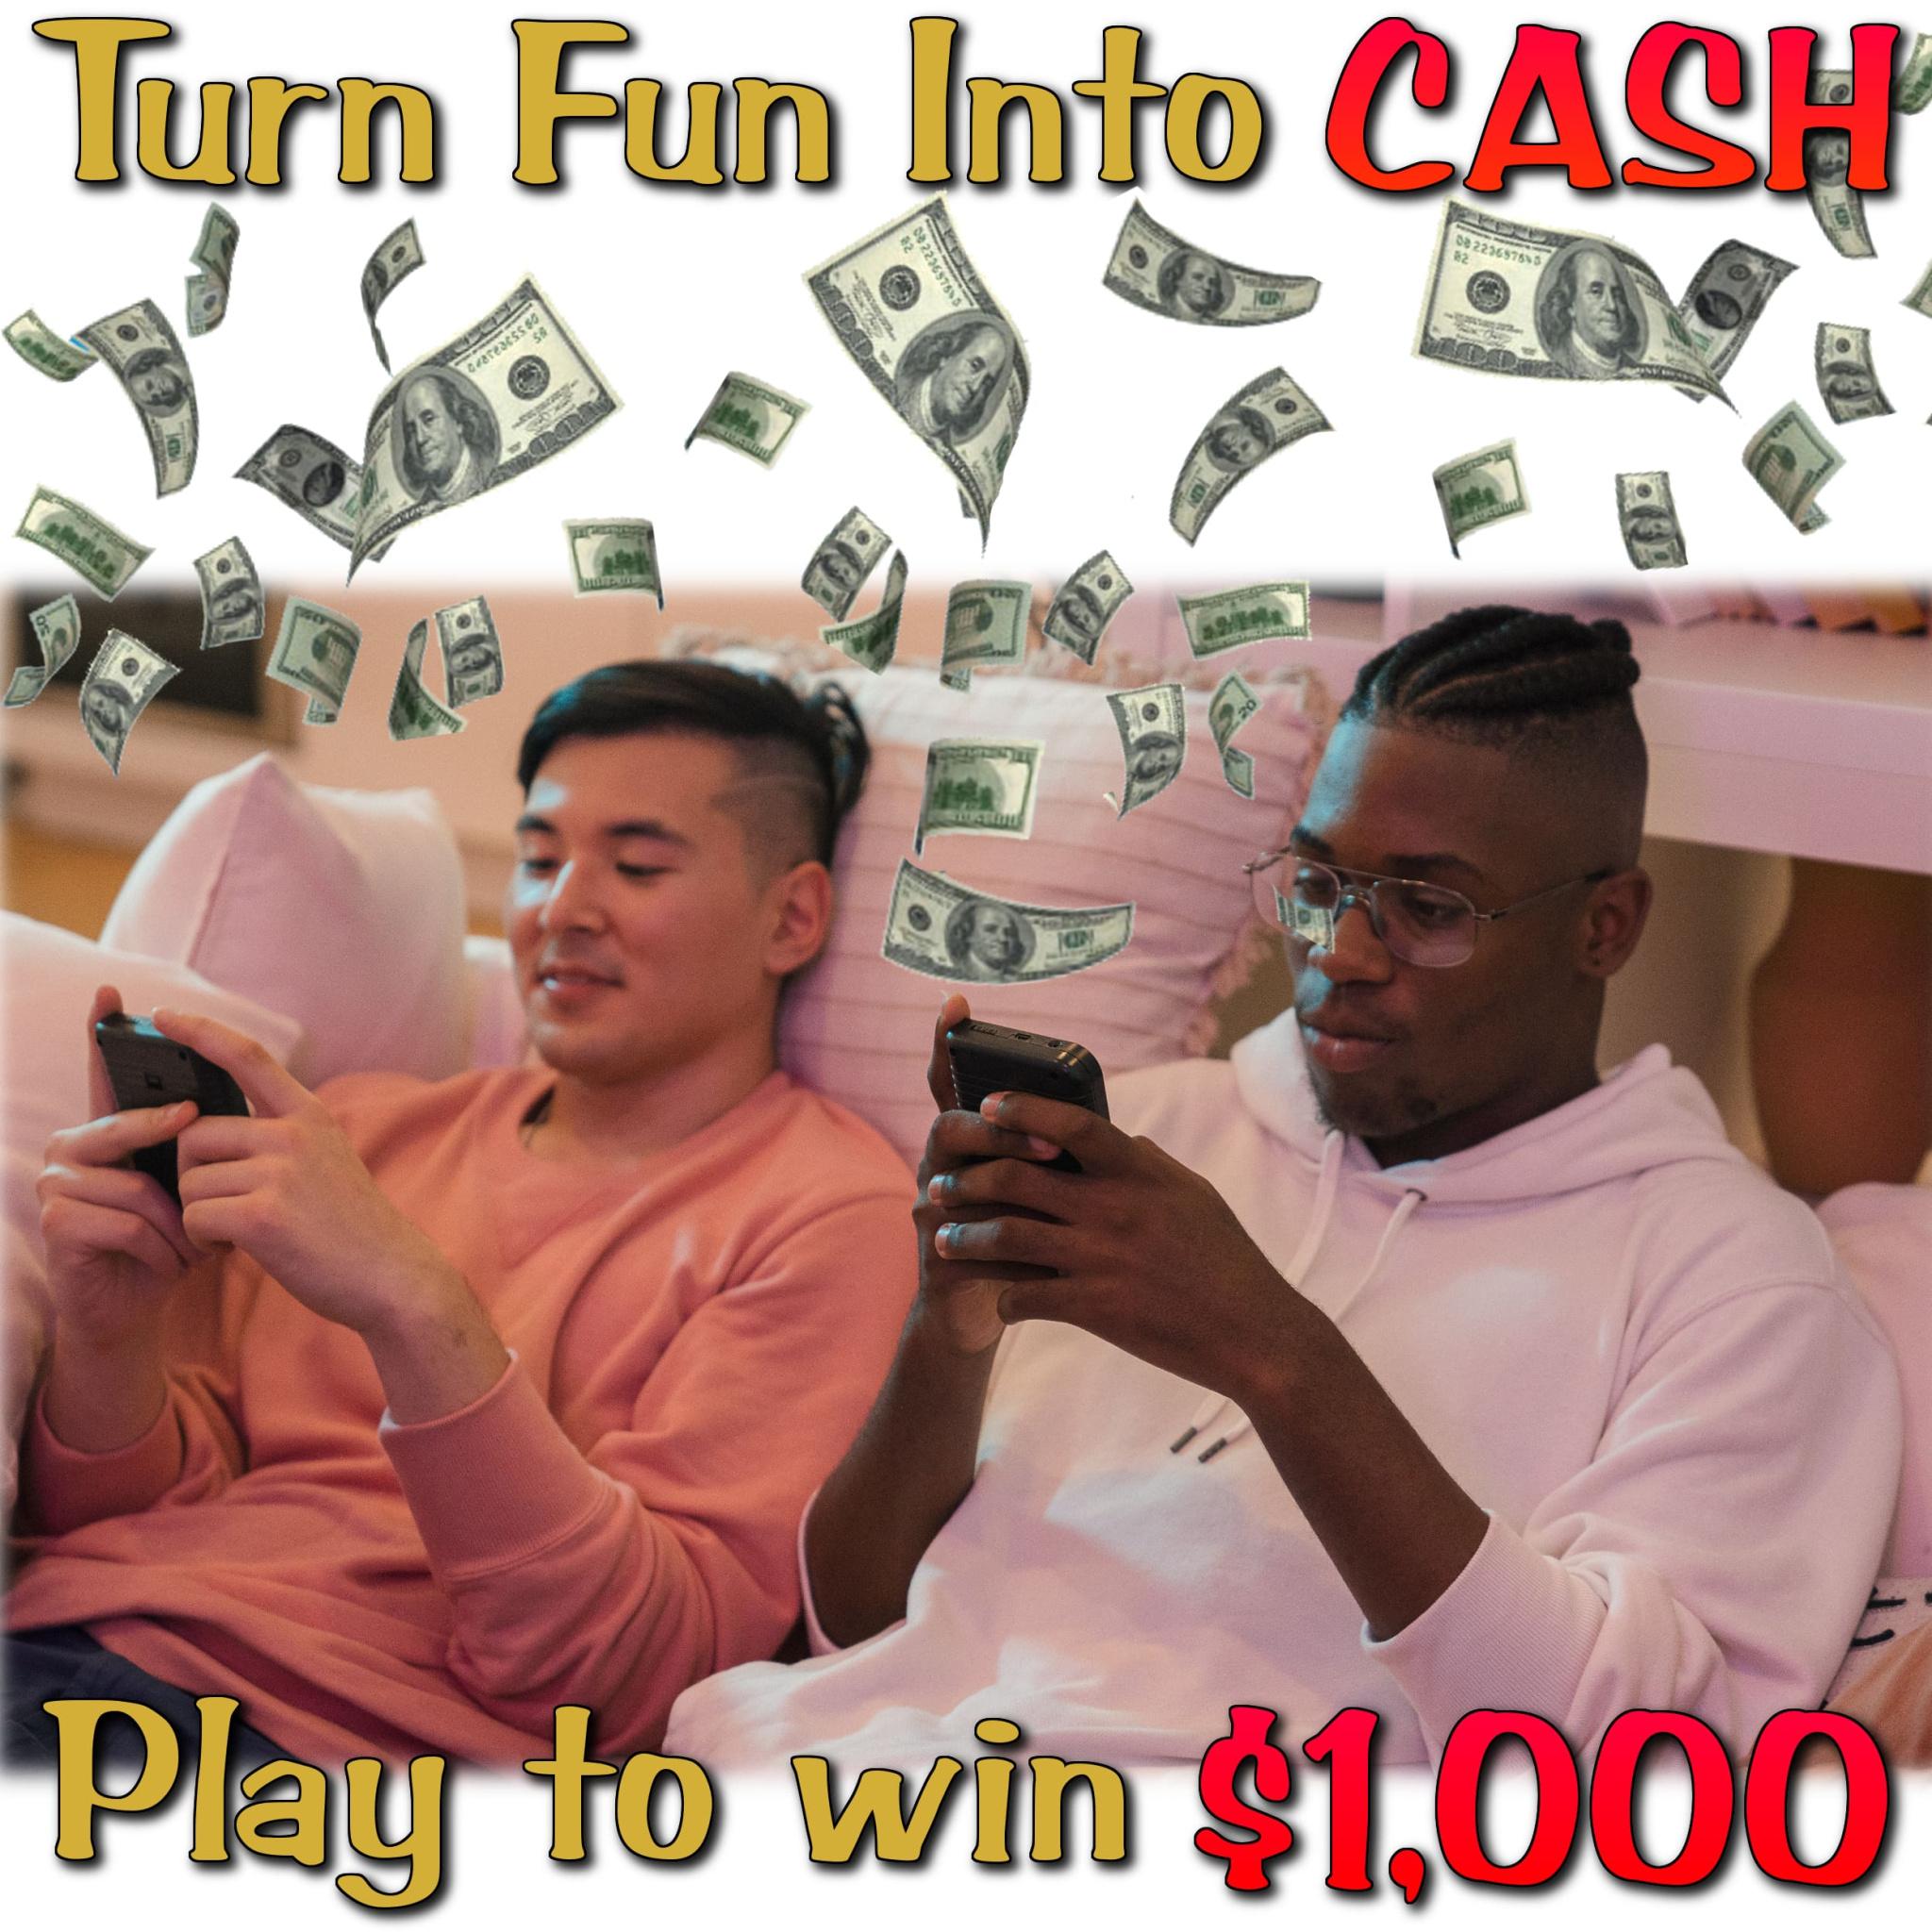 Turn fun into cash